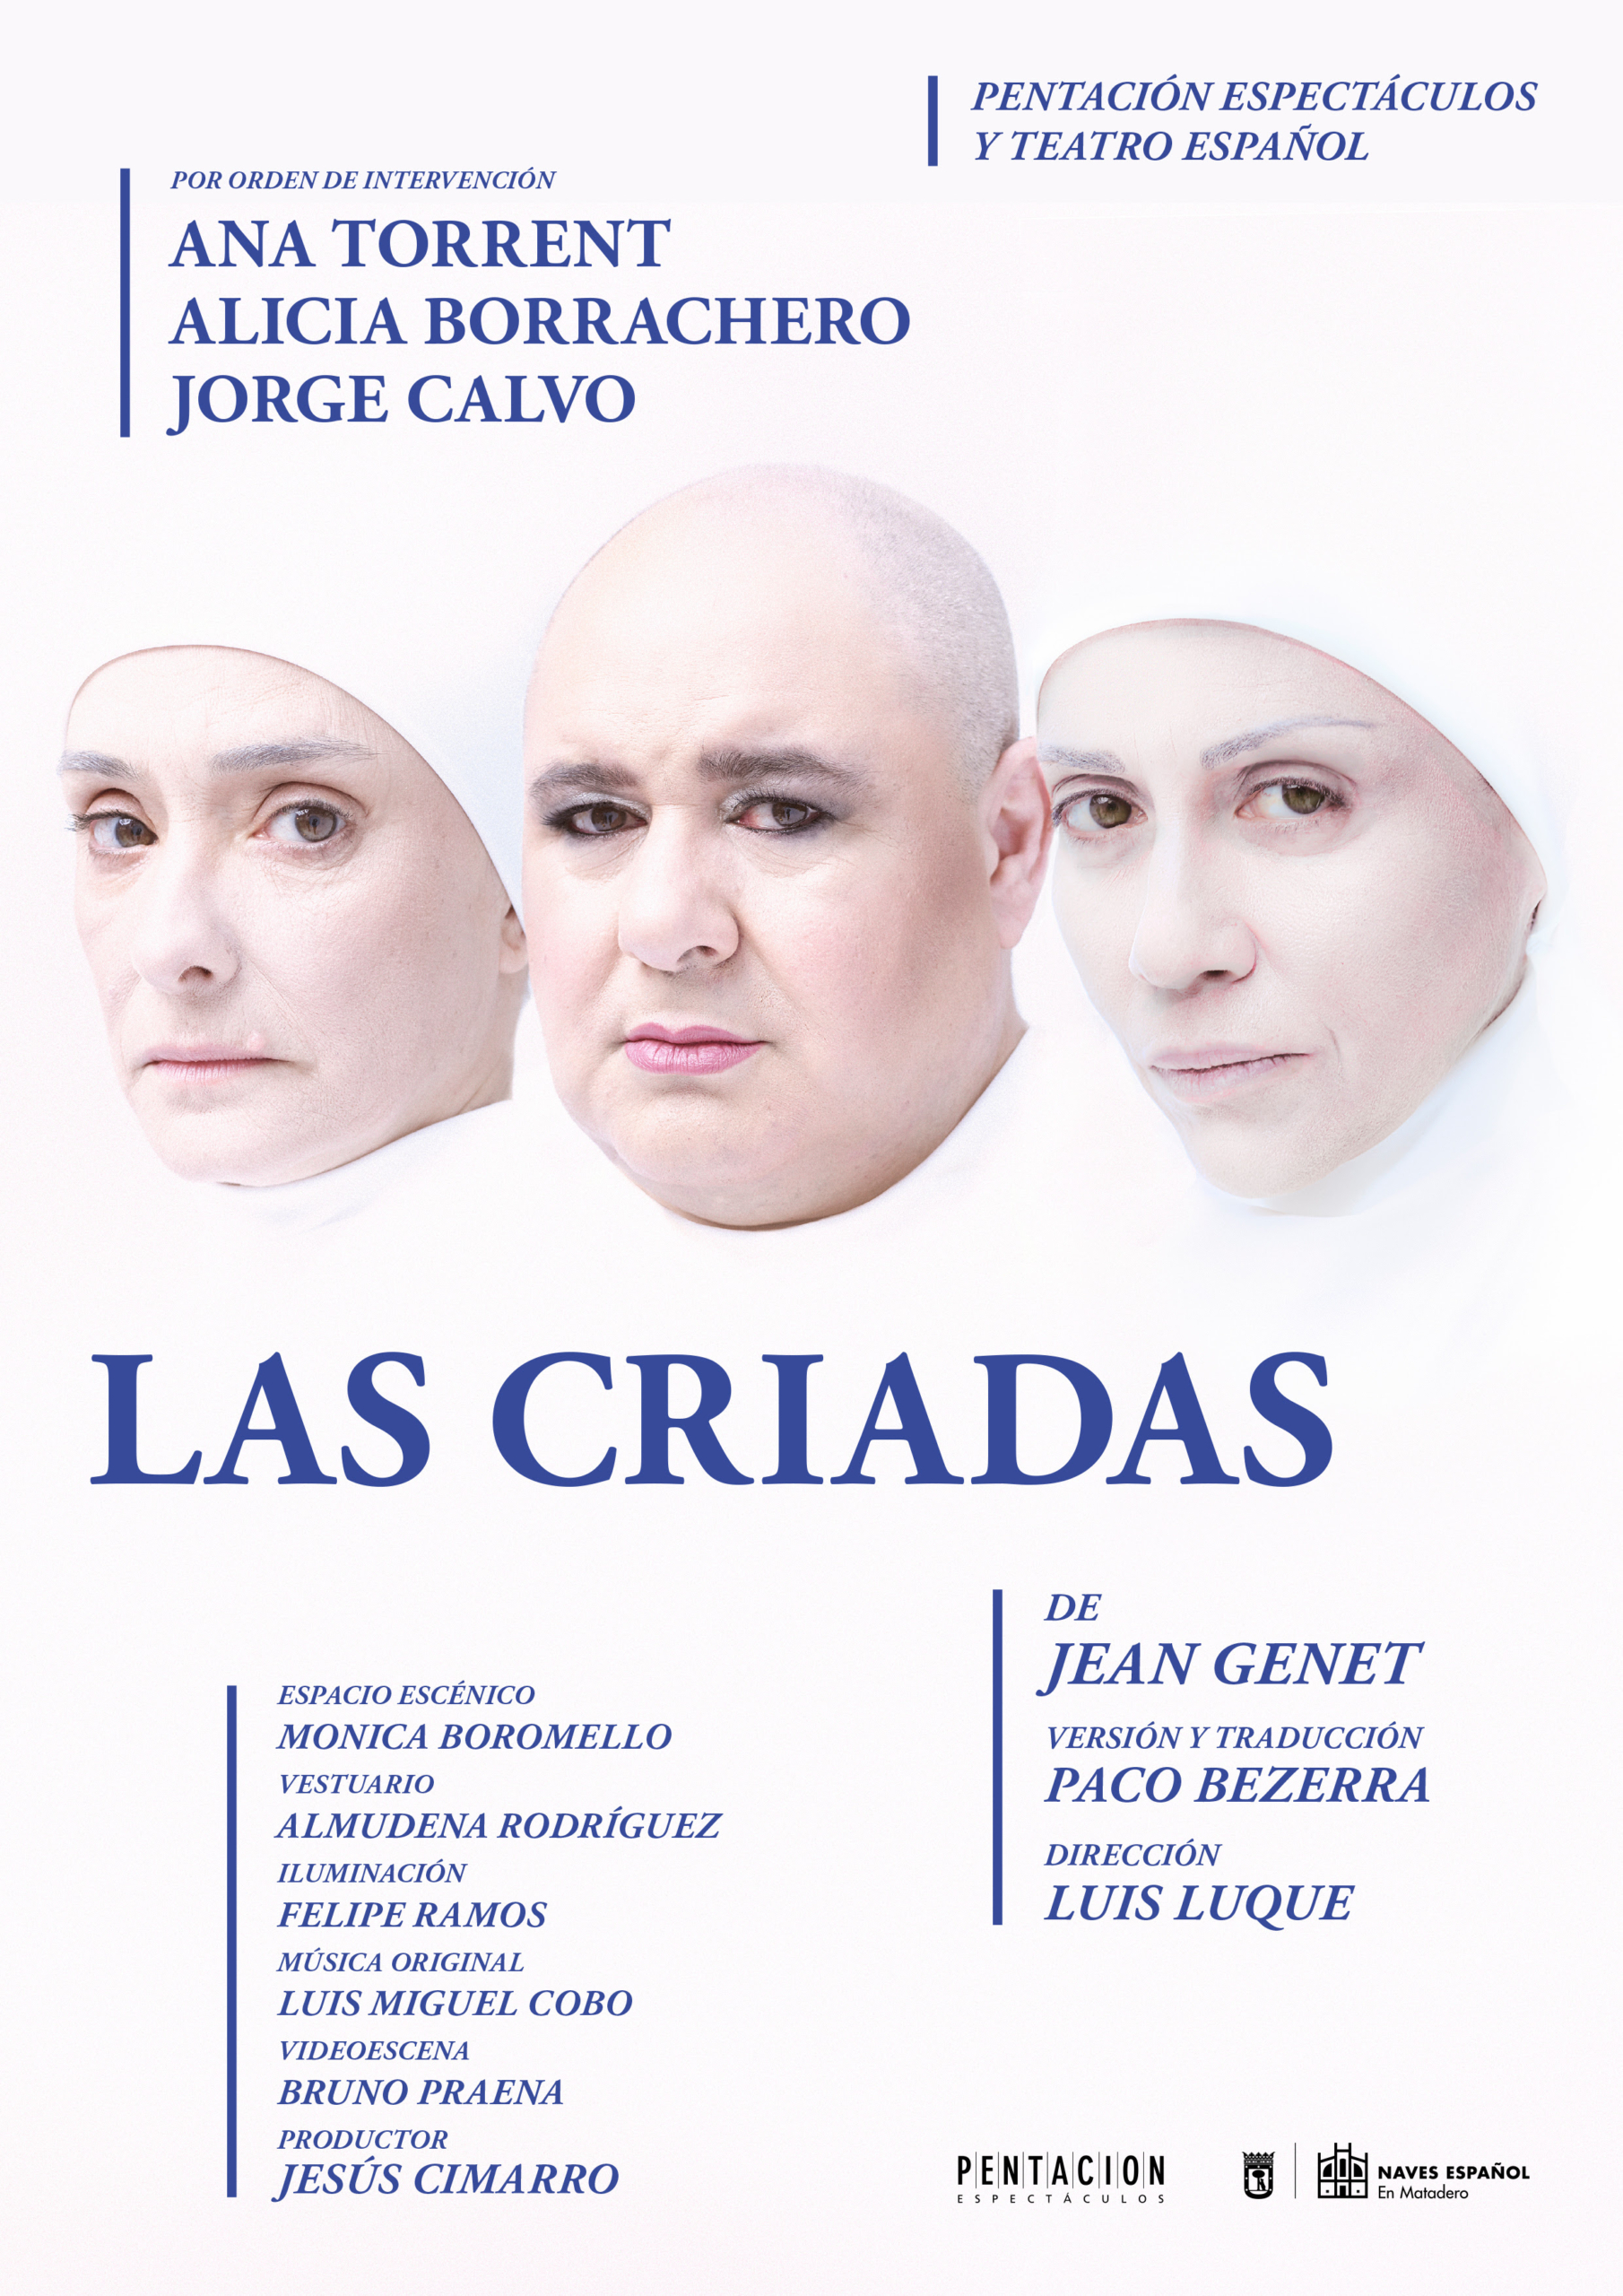 Ana Torrent, Alicia Borrachero y Jorge Calvo protagonizan “Las Criadas” de Jean Genet